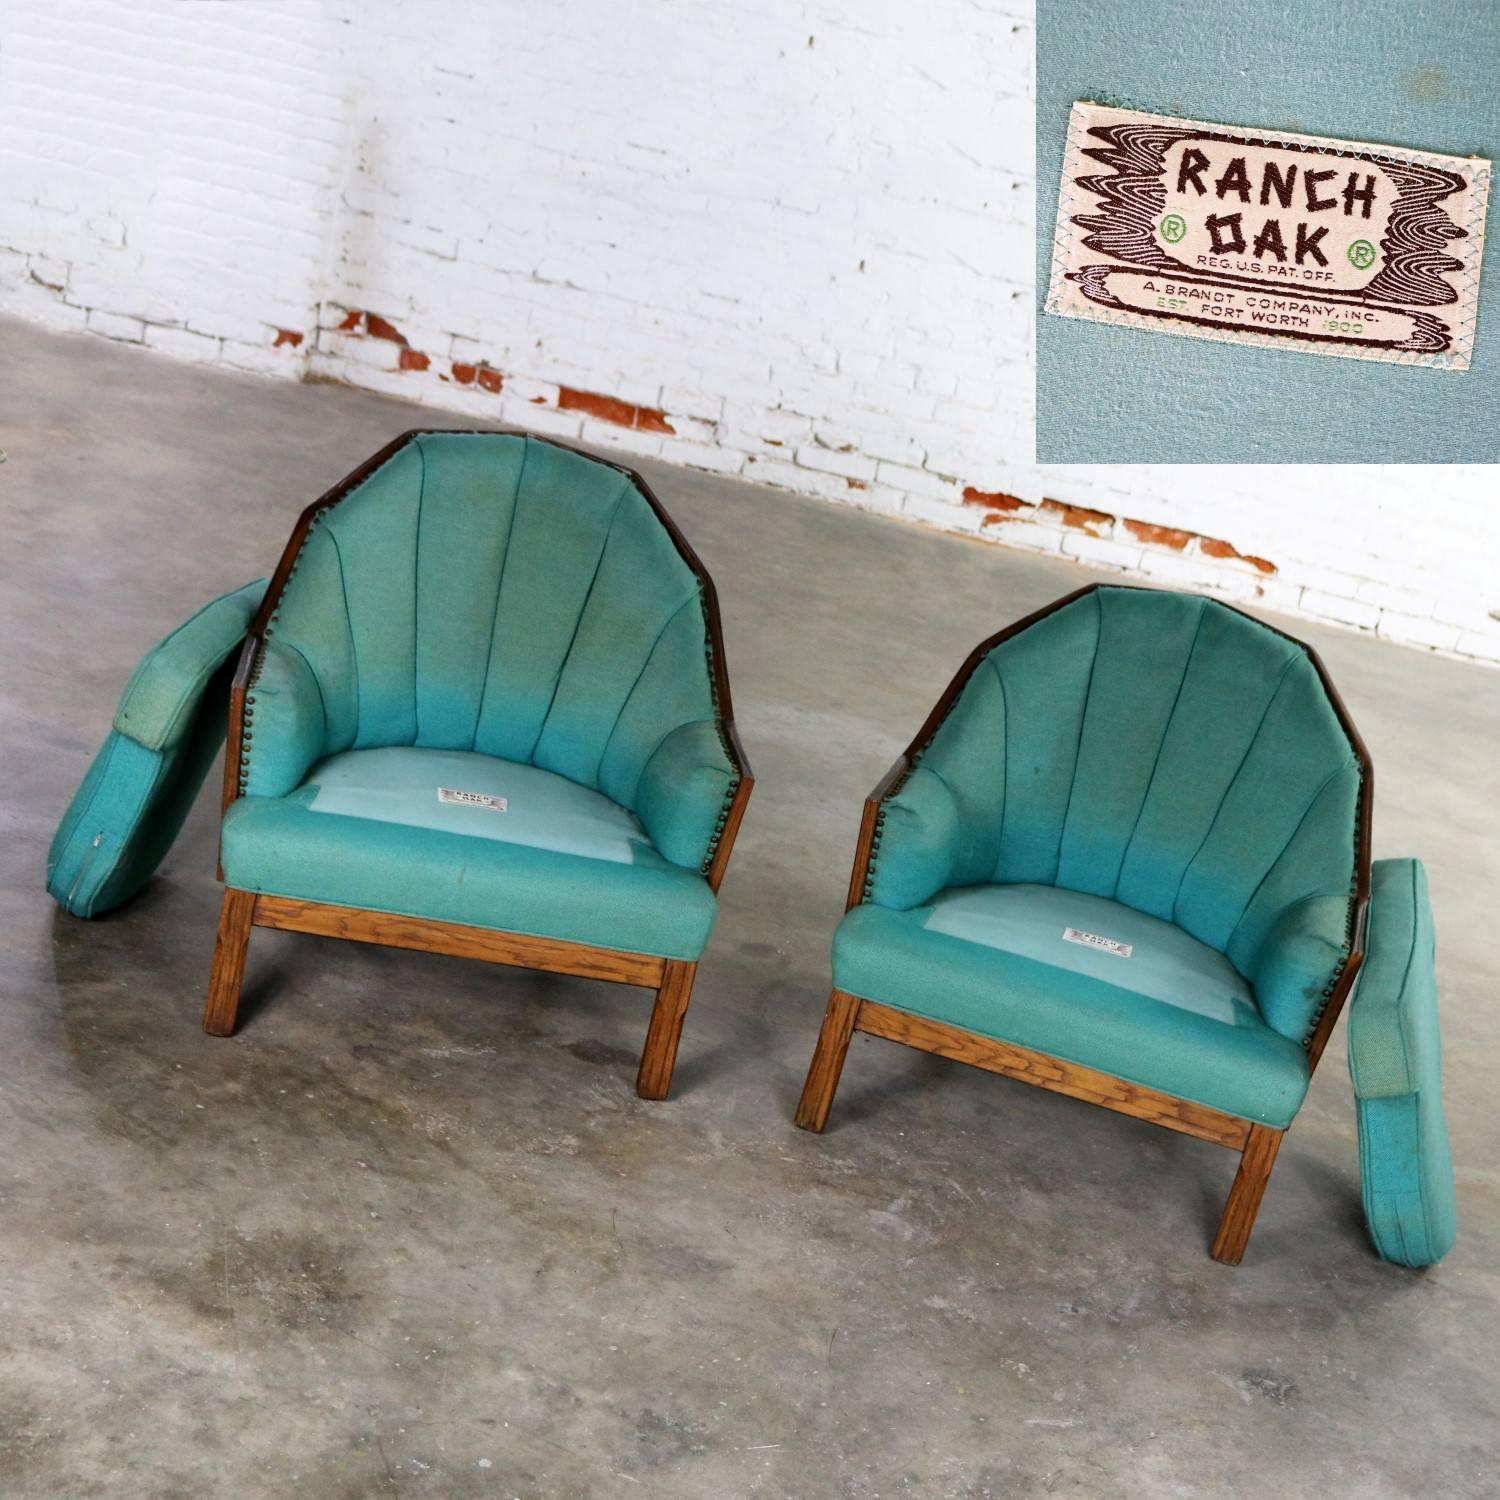 Brandt Company Ranch Oak Cowboy Western Style Barrel Club Chairs a Pair 1